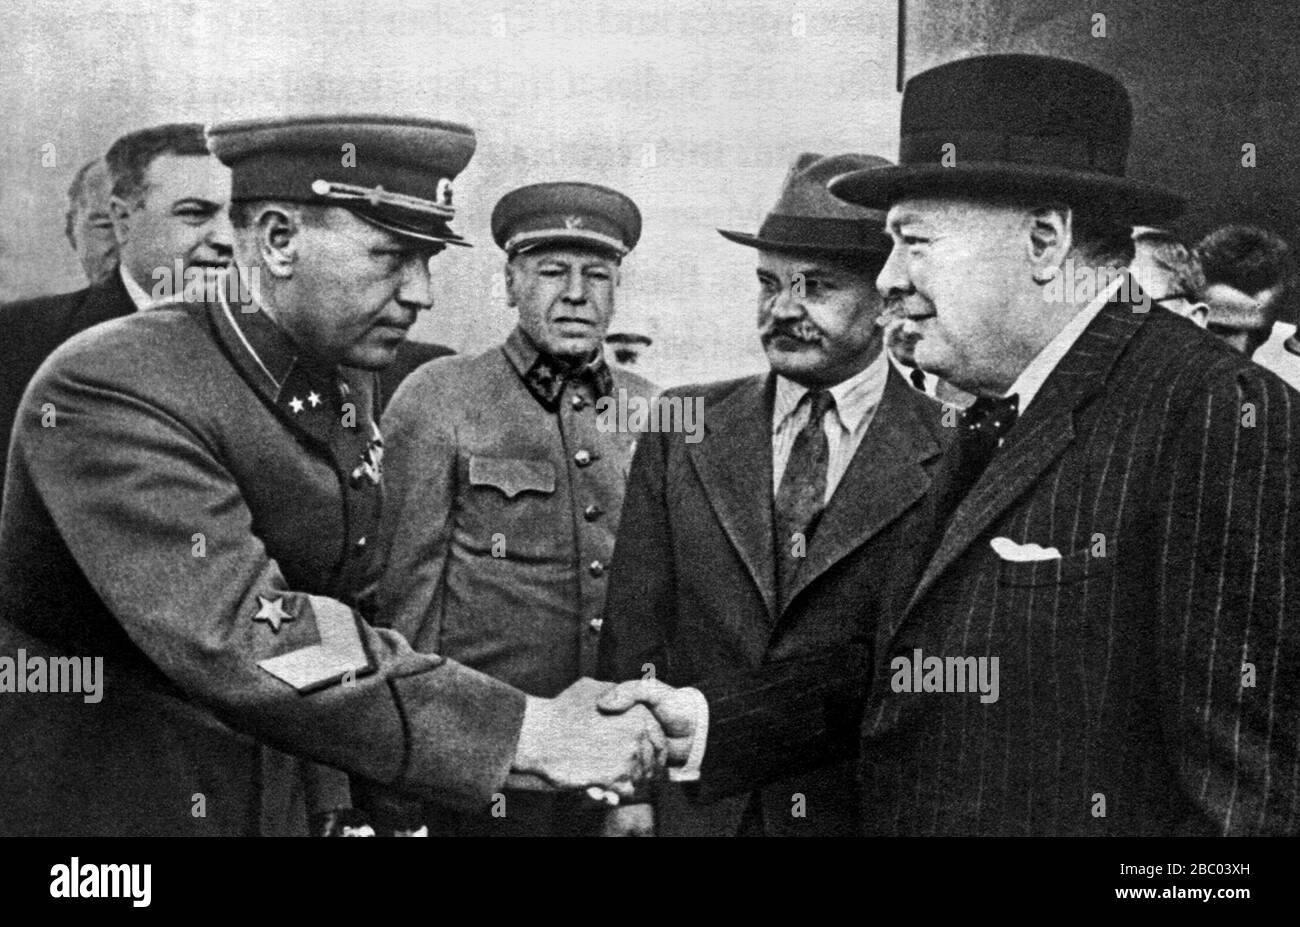 Winston Churchill à l'aéroport de Moscou en train de serrer la main avec le commandant de Moscou. Aussi présent Molotov et Marshall Shaposhnikov. 17 août 1942 Banque D'Images